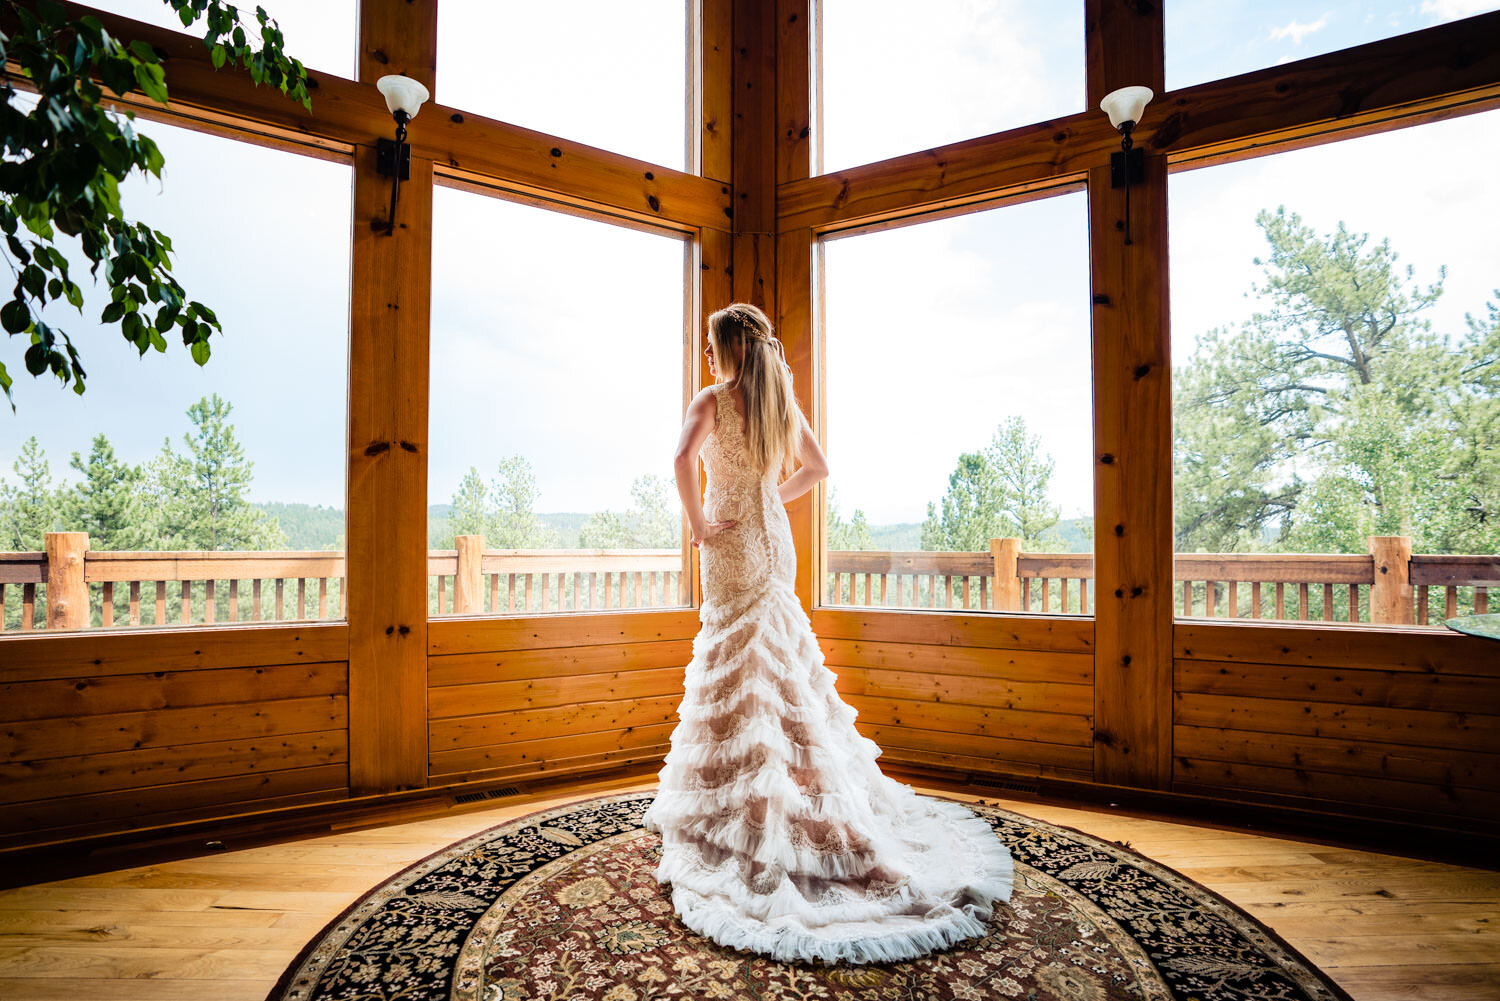  Tihsreed Ranch Wedding | Woodland Park Wedding Photographer | JMGant Photography 